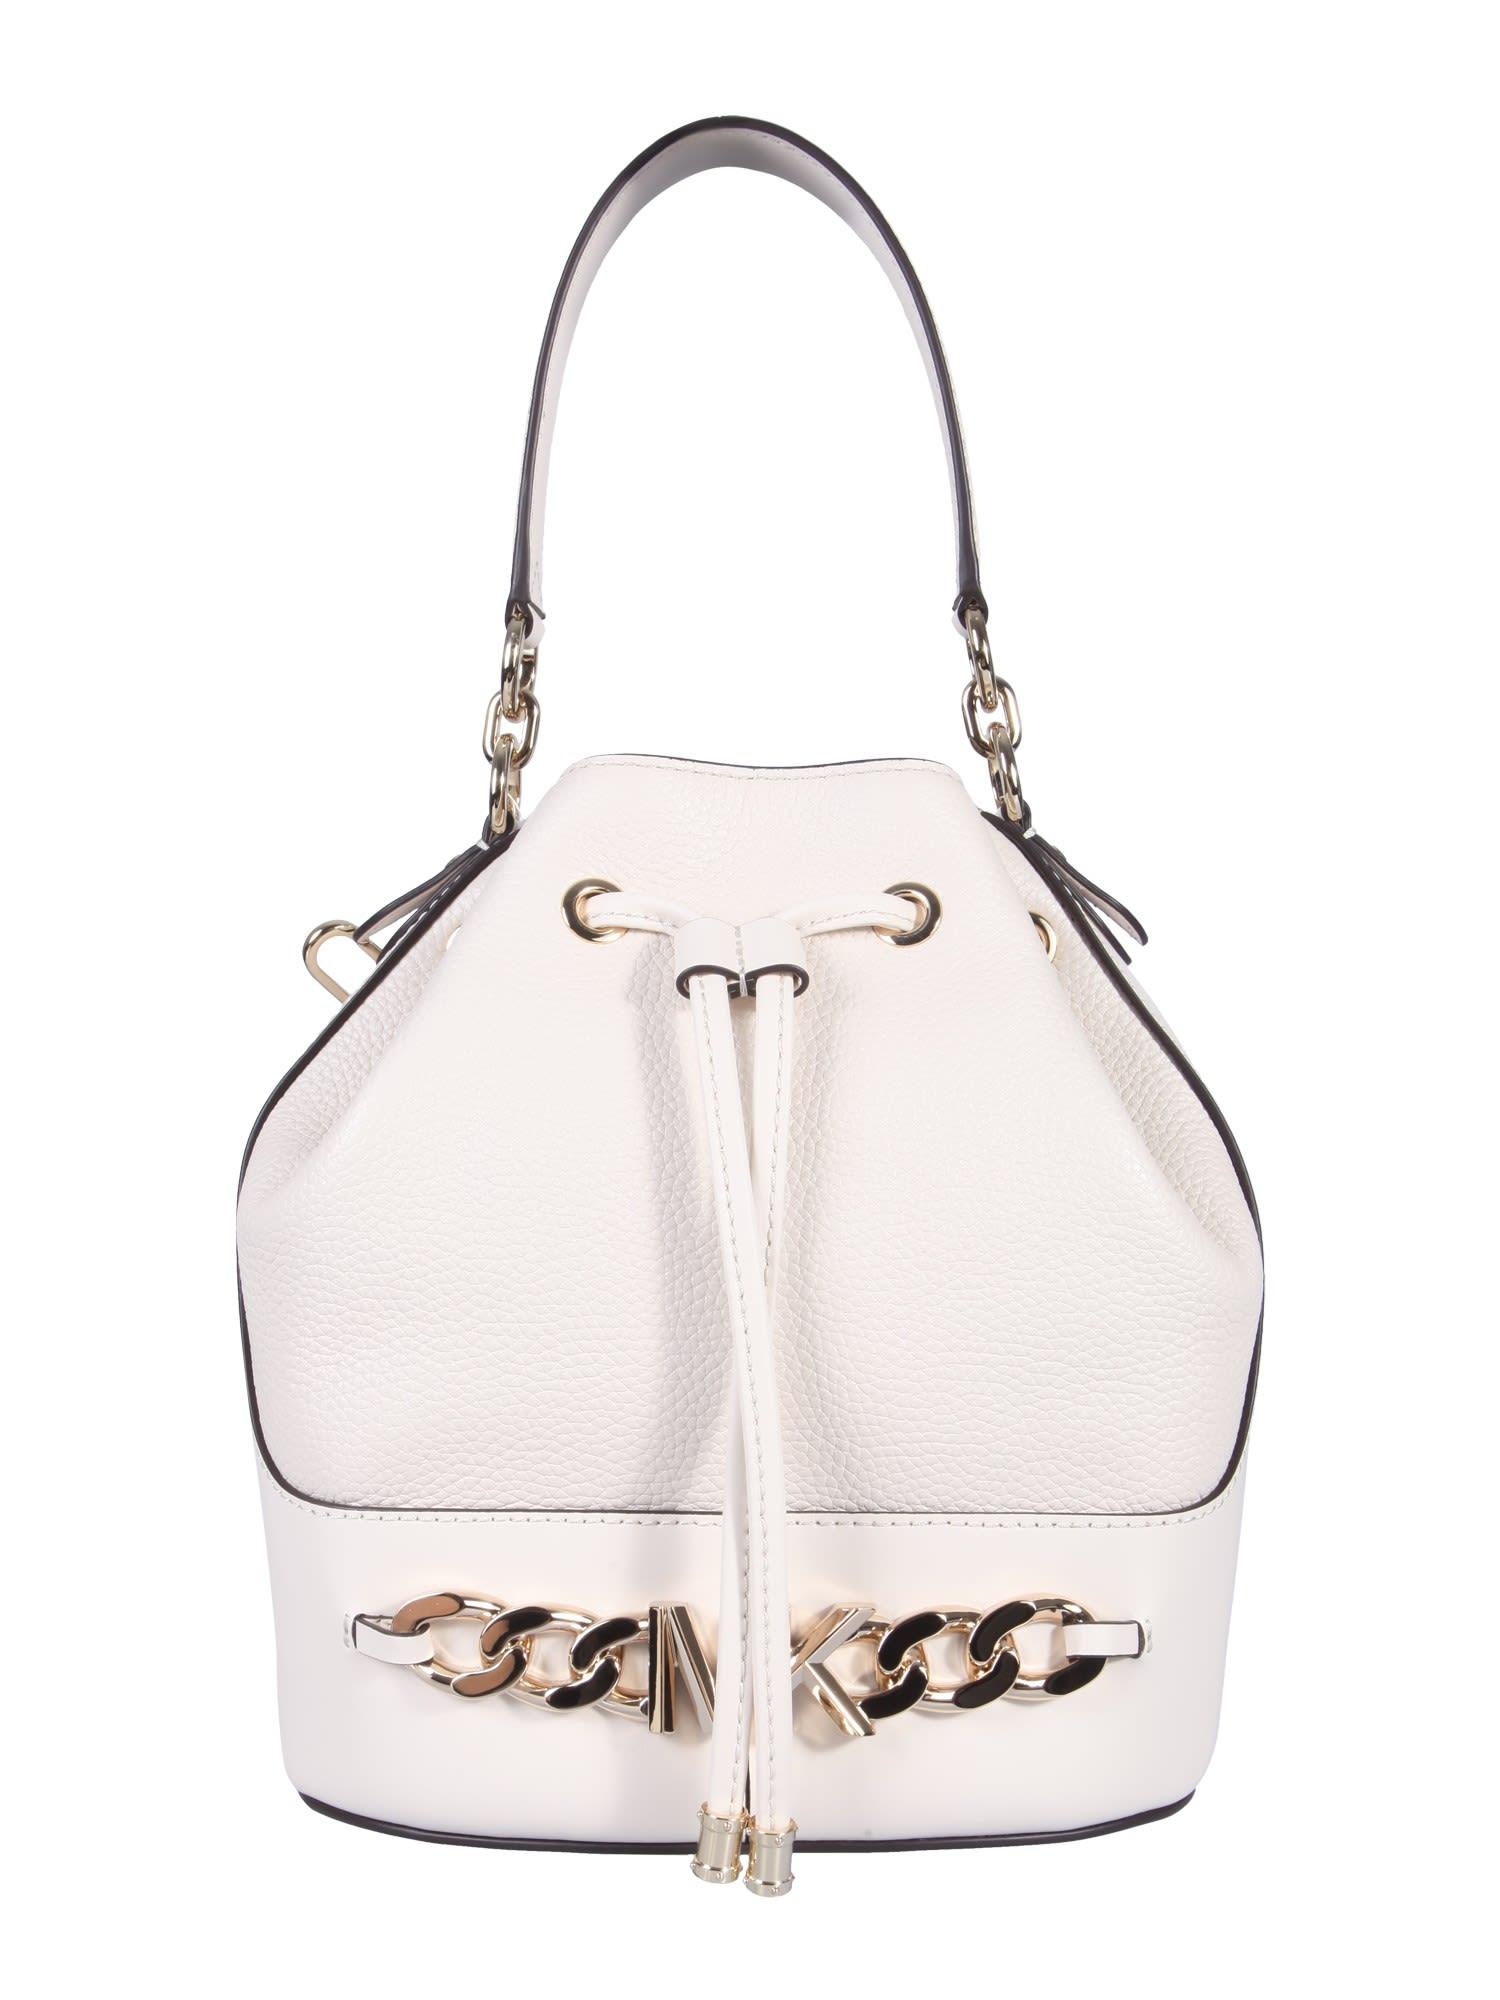 Michael Kors Devon Bucket Bag, Rose/White 